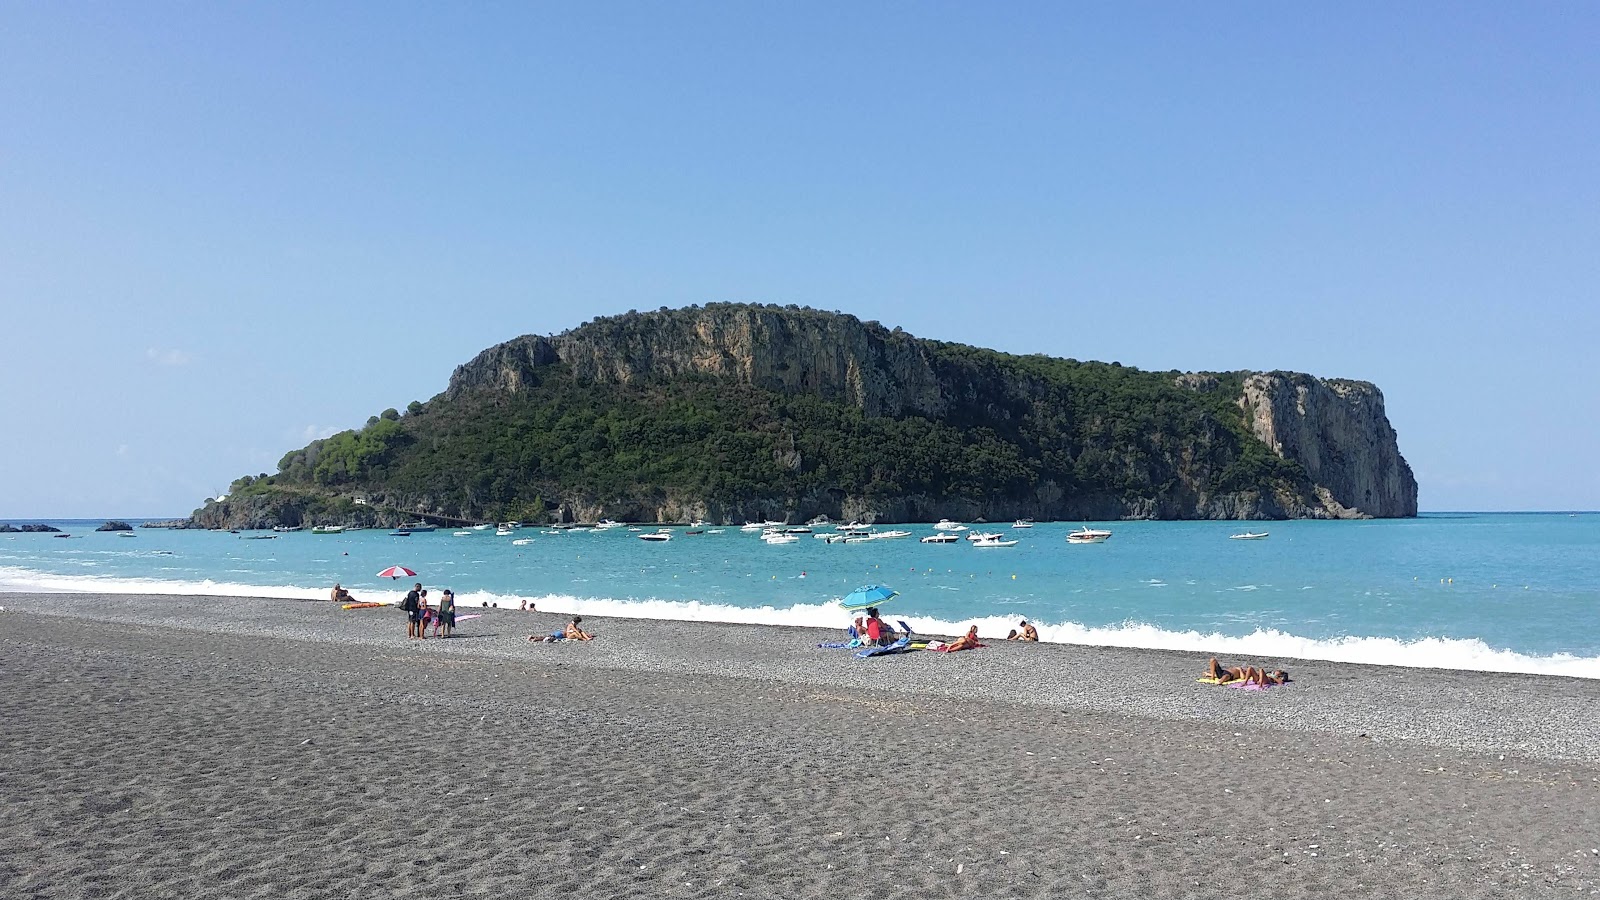 Spiaggia Praia a Mare'in fotoğrafı gri ince çakıl taş yüzey ile